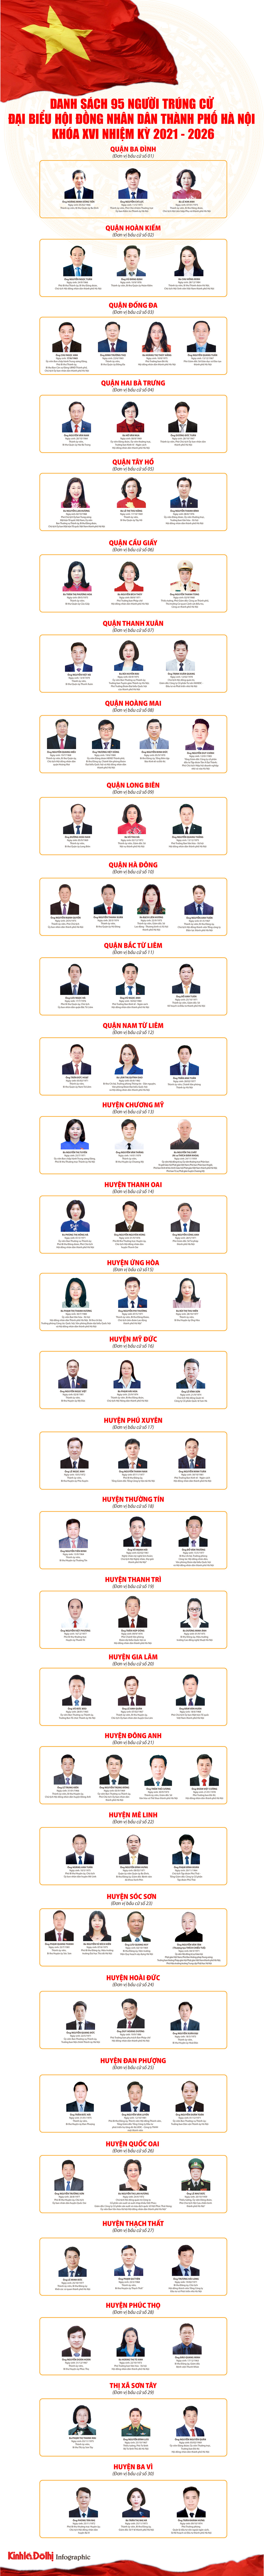 [Infographic] Danh sách 95 người trúng cử đại biểu HĐND TP Hà Nội khóa XVI, nhiệm kỳ 2021 - 2026 - Ảnh 1